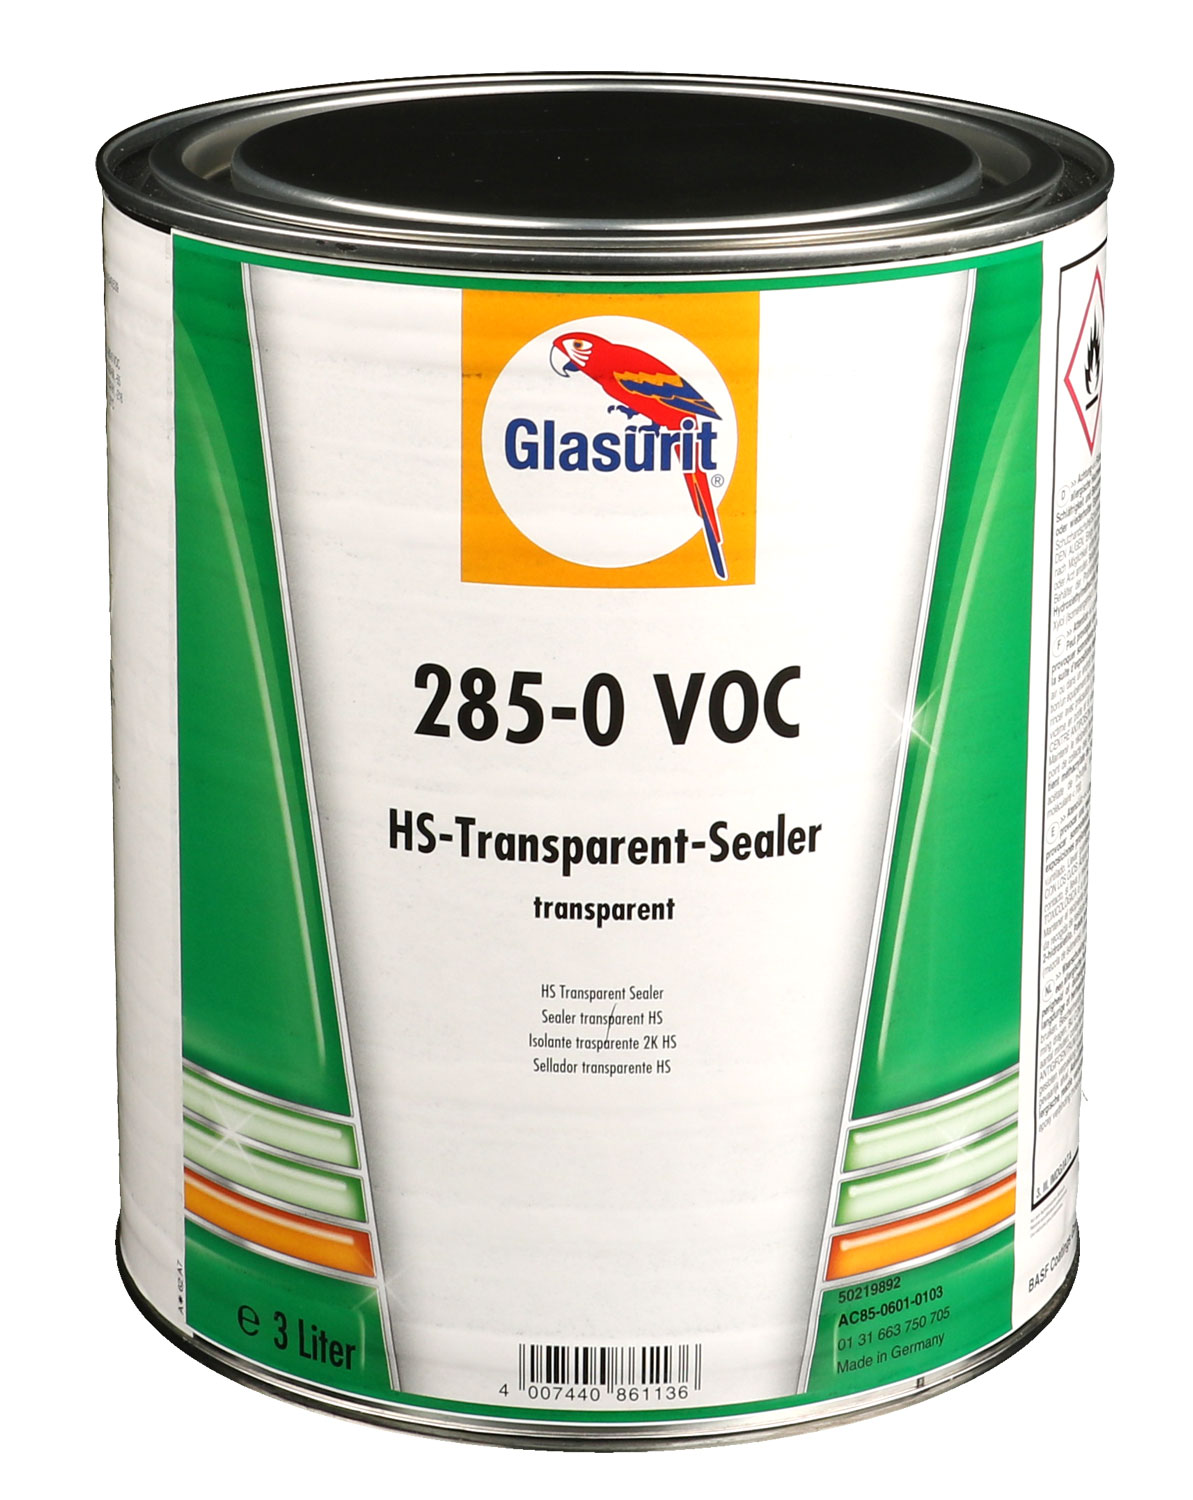 Glasurit VOC Transparent-Sealer farblos 285-0